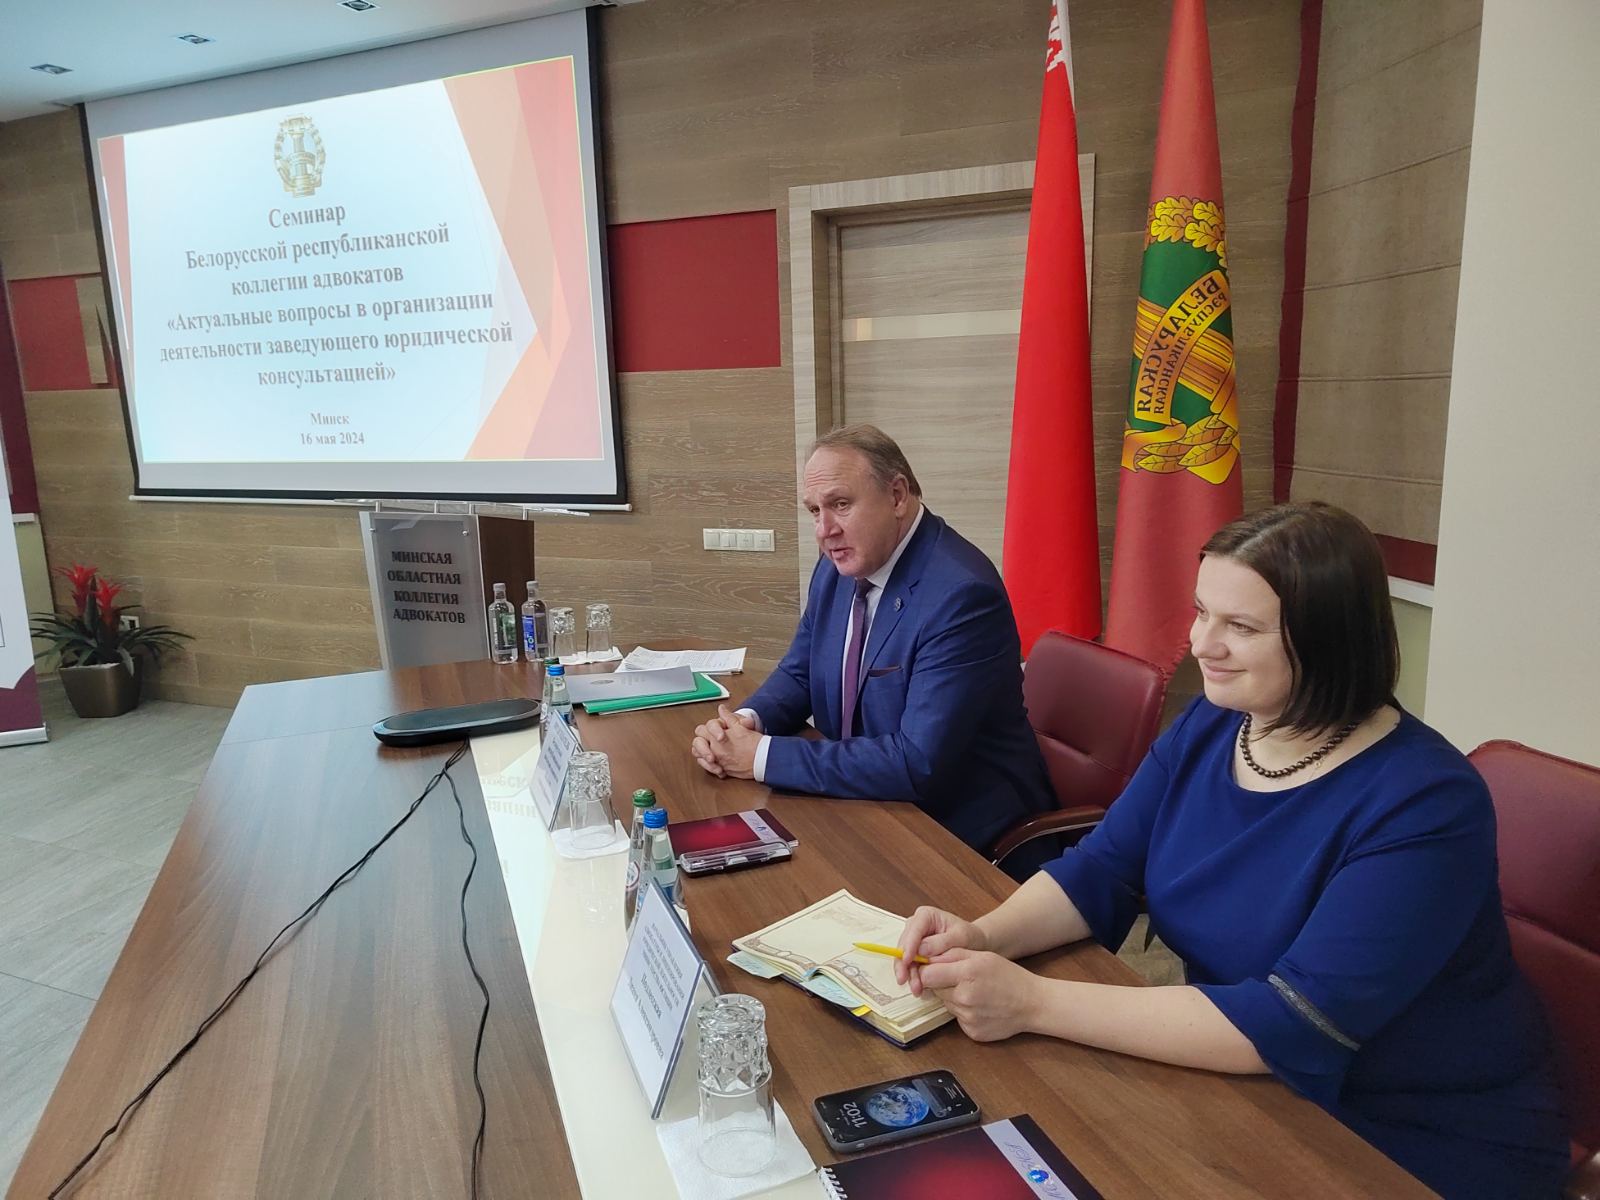 Семинар по вопросам деятельности заведующих юридическими консультациями  состоялся сегодня в Минске